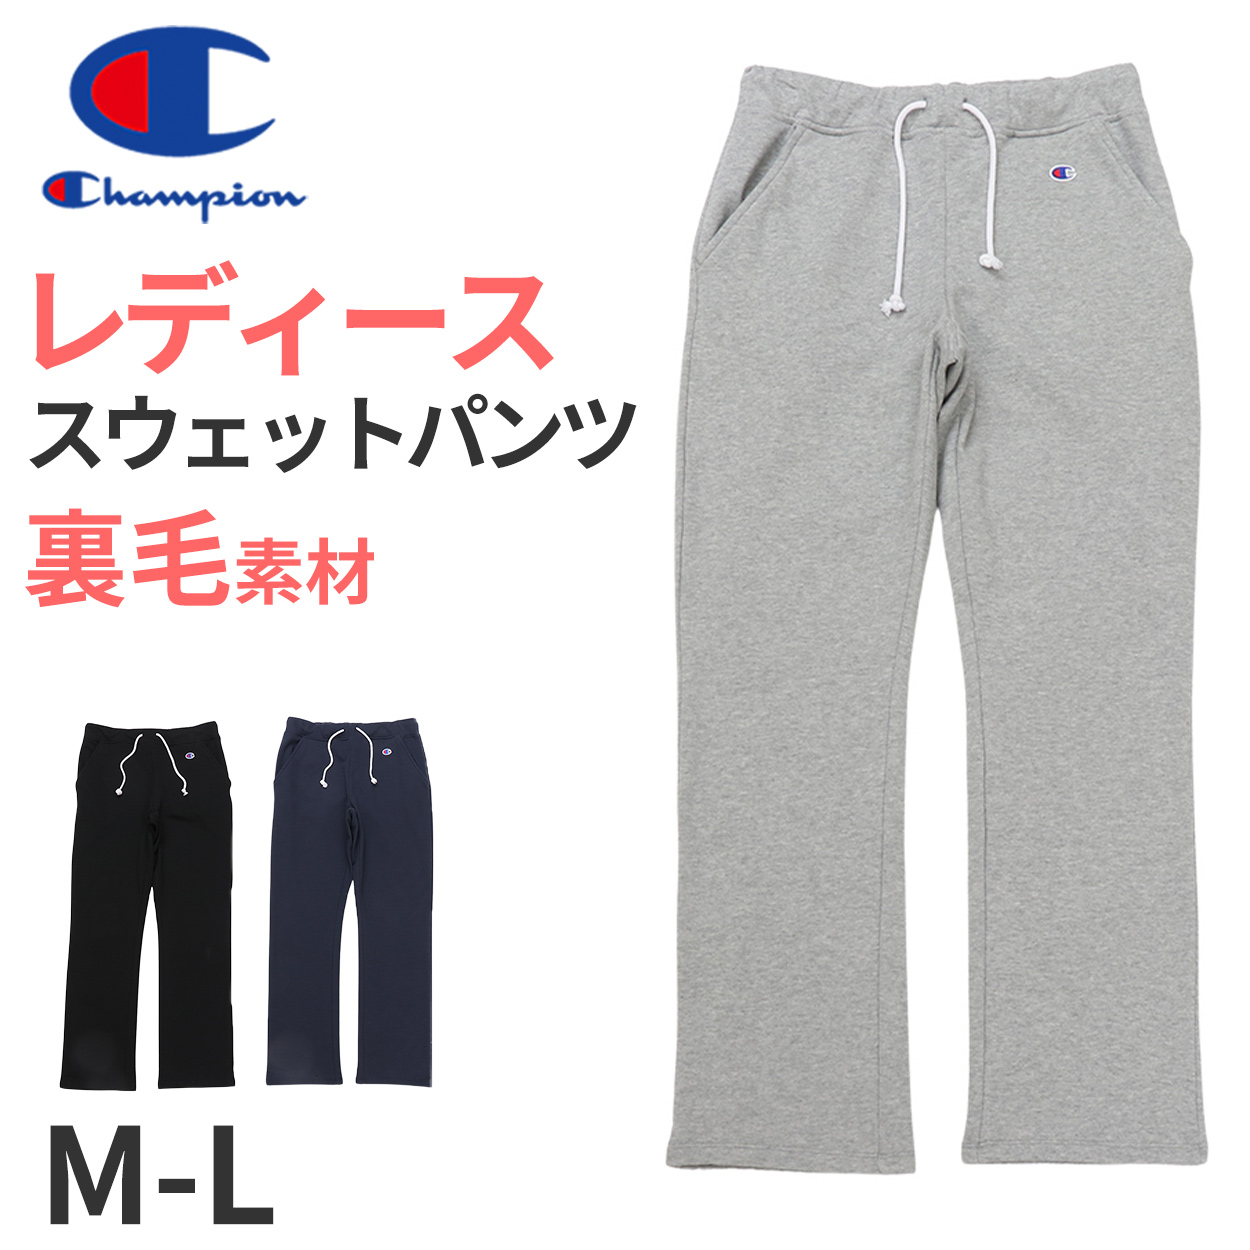 日本正規品 Champion ジャージ ロングパンツ 紺 M ロングパンツ 新品 